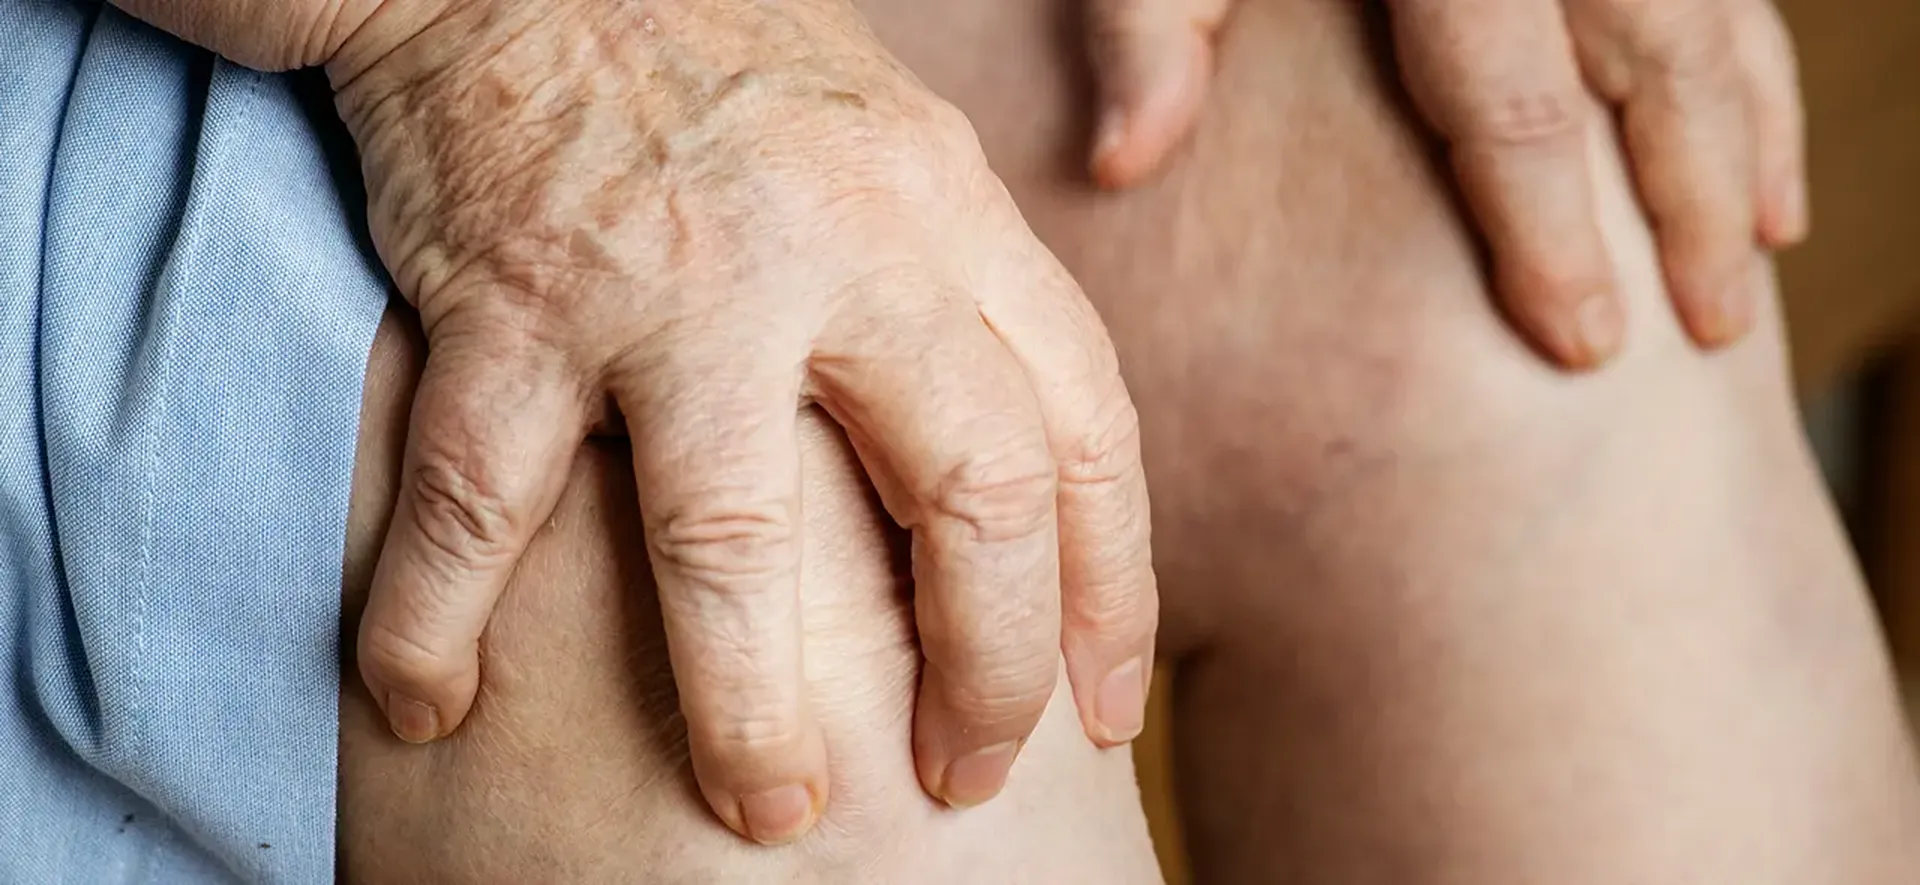 Artrite reumatoide: diagnóstico e tratamento imediato são fundamentais para controle da dor nas articulações